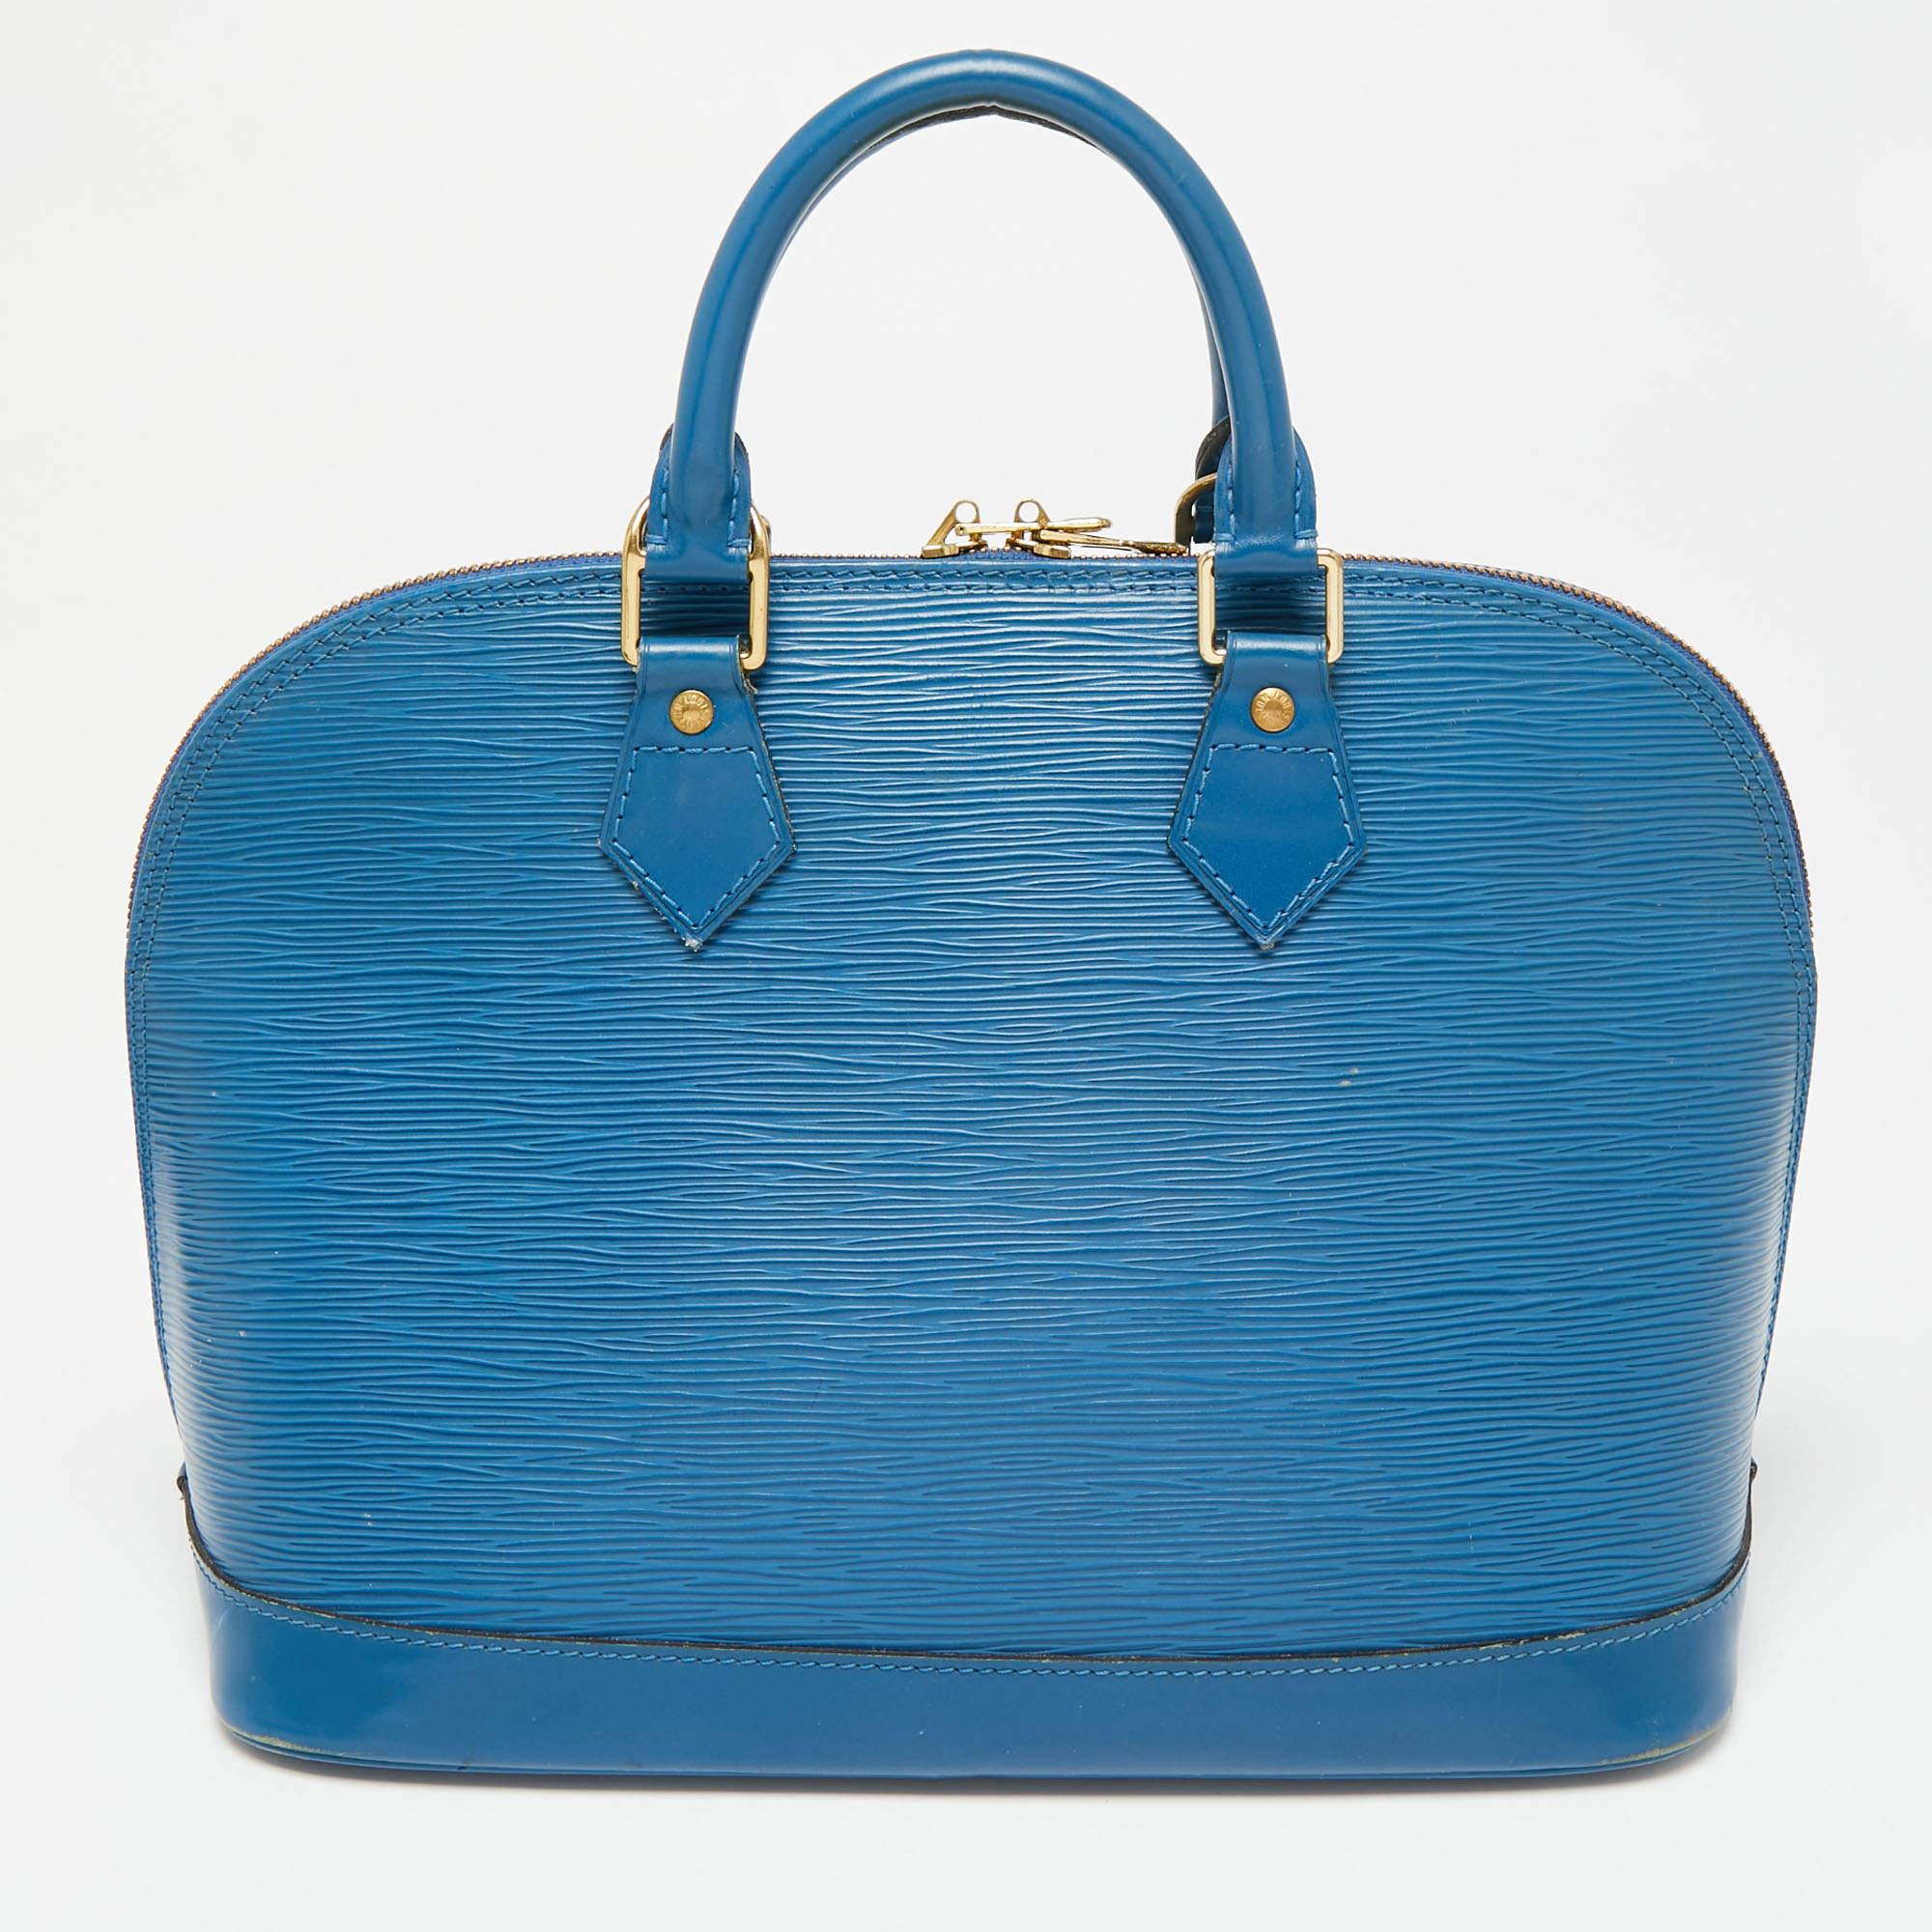 Die Alma-Tasche, eine Ikone des Hauses Louis Vuitton, ist mit Sicherheit eine der beliebtesten Taschen, in die man investiert. Holen Sie sich Ihren noch heute mit diesem Alma aus Epi-Leder. Die Tasche ist mit doppelten Reißverschlüssen und einer